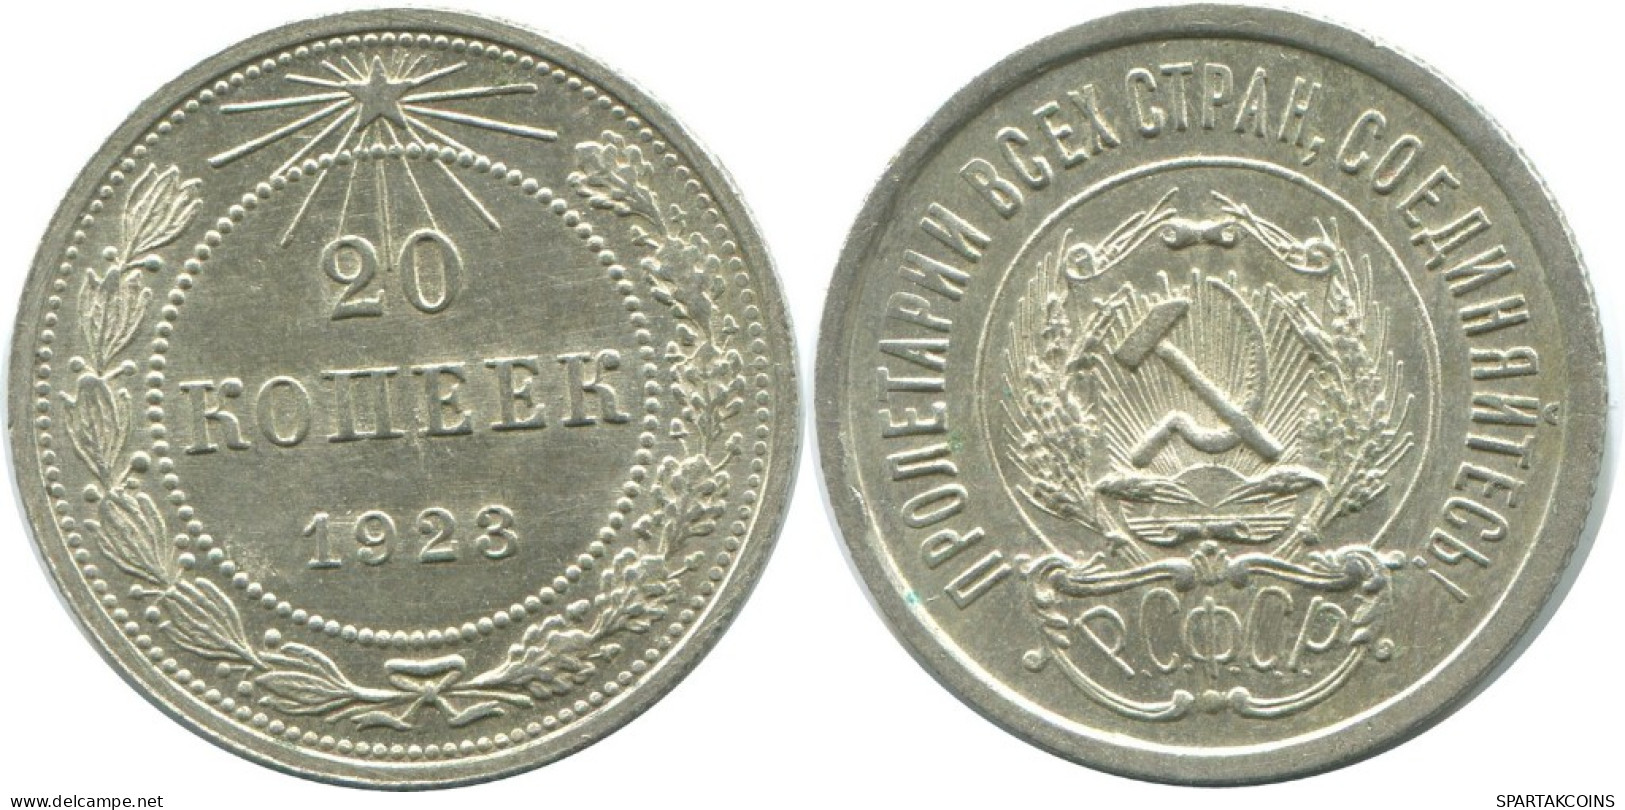 20 KOPEKS 1923 RUSSIA RSFSR SILVER Coin HIGH GRADE #AF617.U.A - Russland